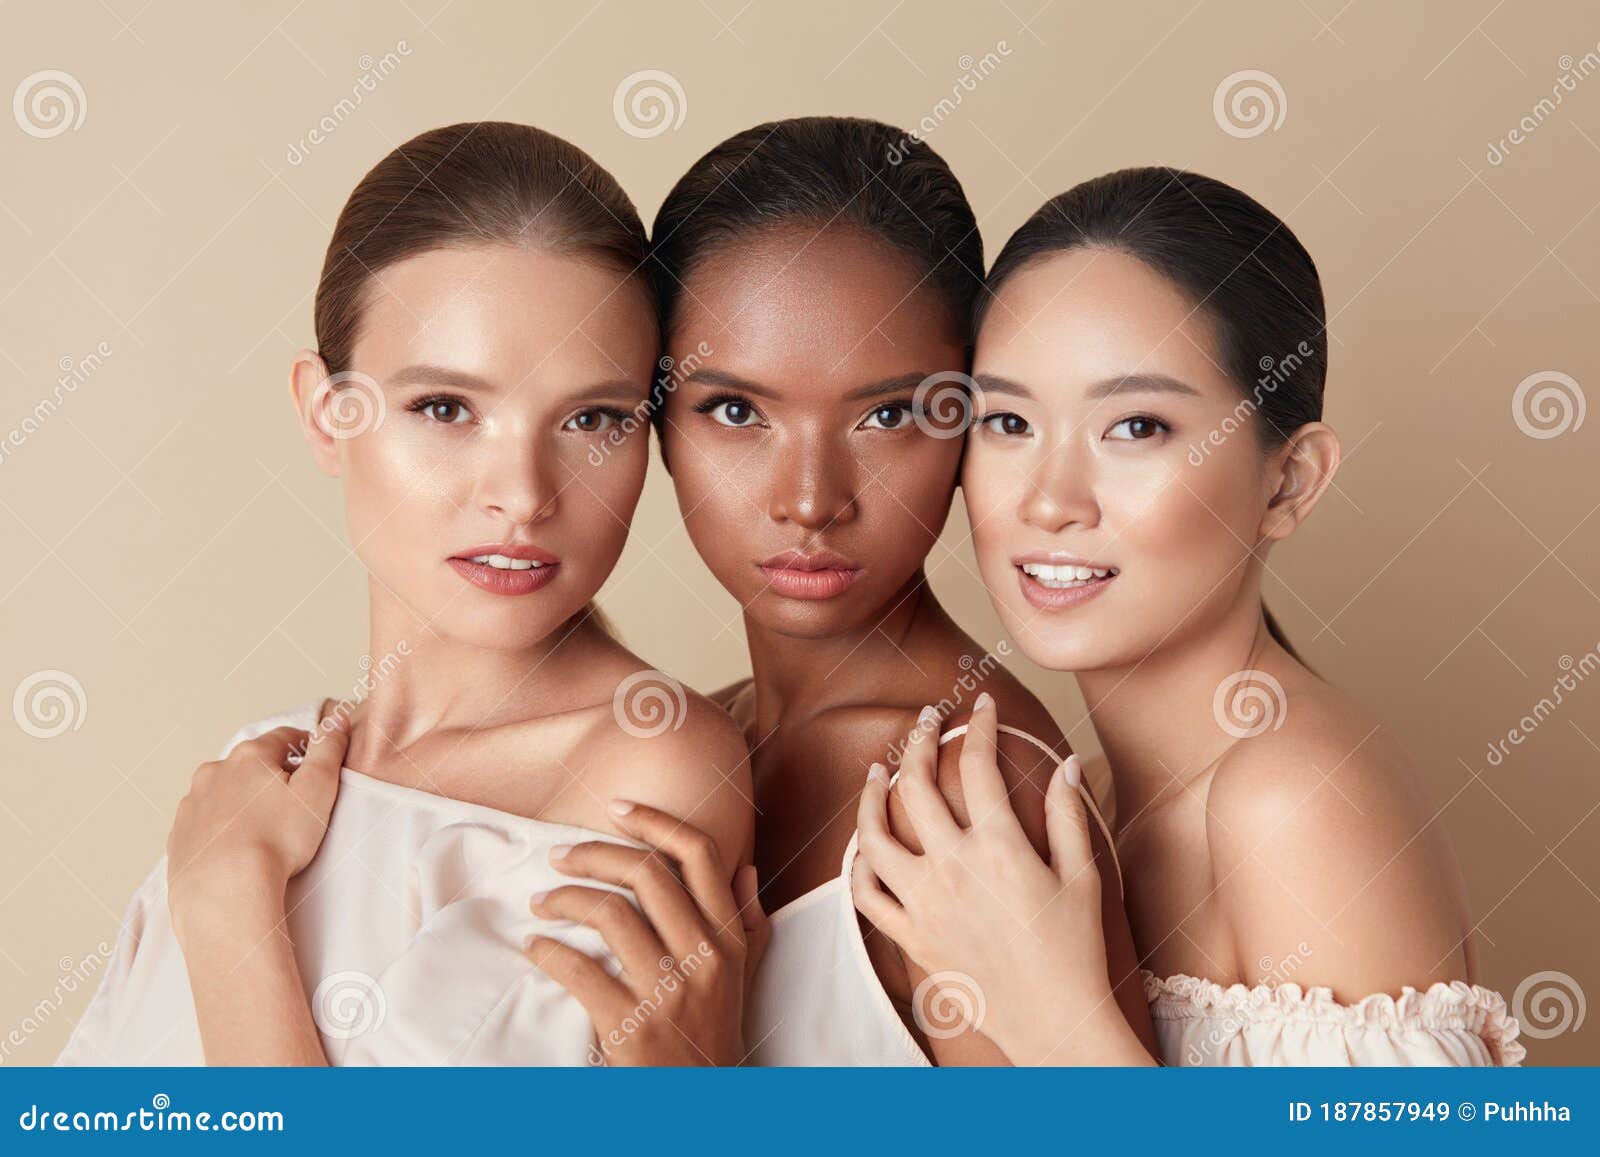 Beautiful Mixed Race Women Nude